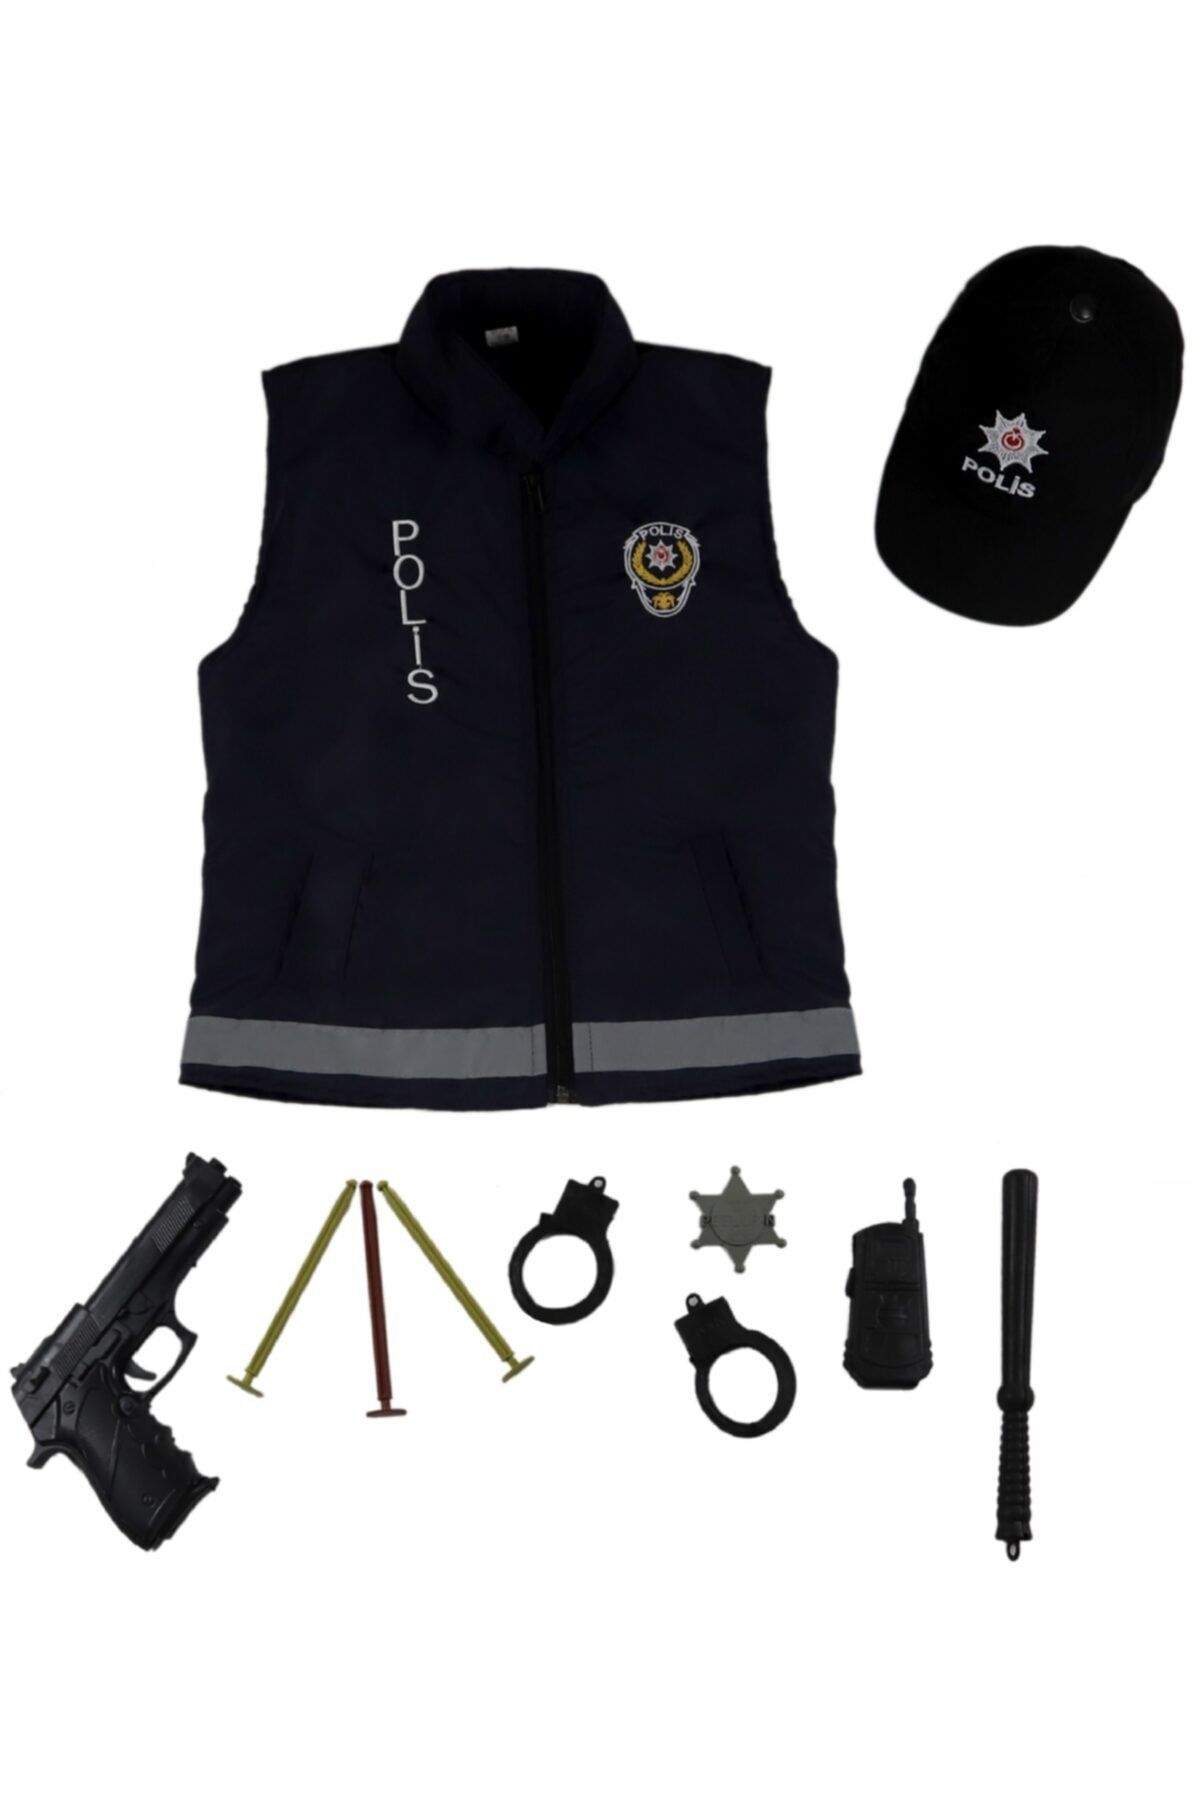 Liyavera Unisex Çocuk Lacivert Polis Şapka ve Yeleği Kostümü Polis Yeleği Kıyafeti Üniforması O